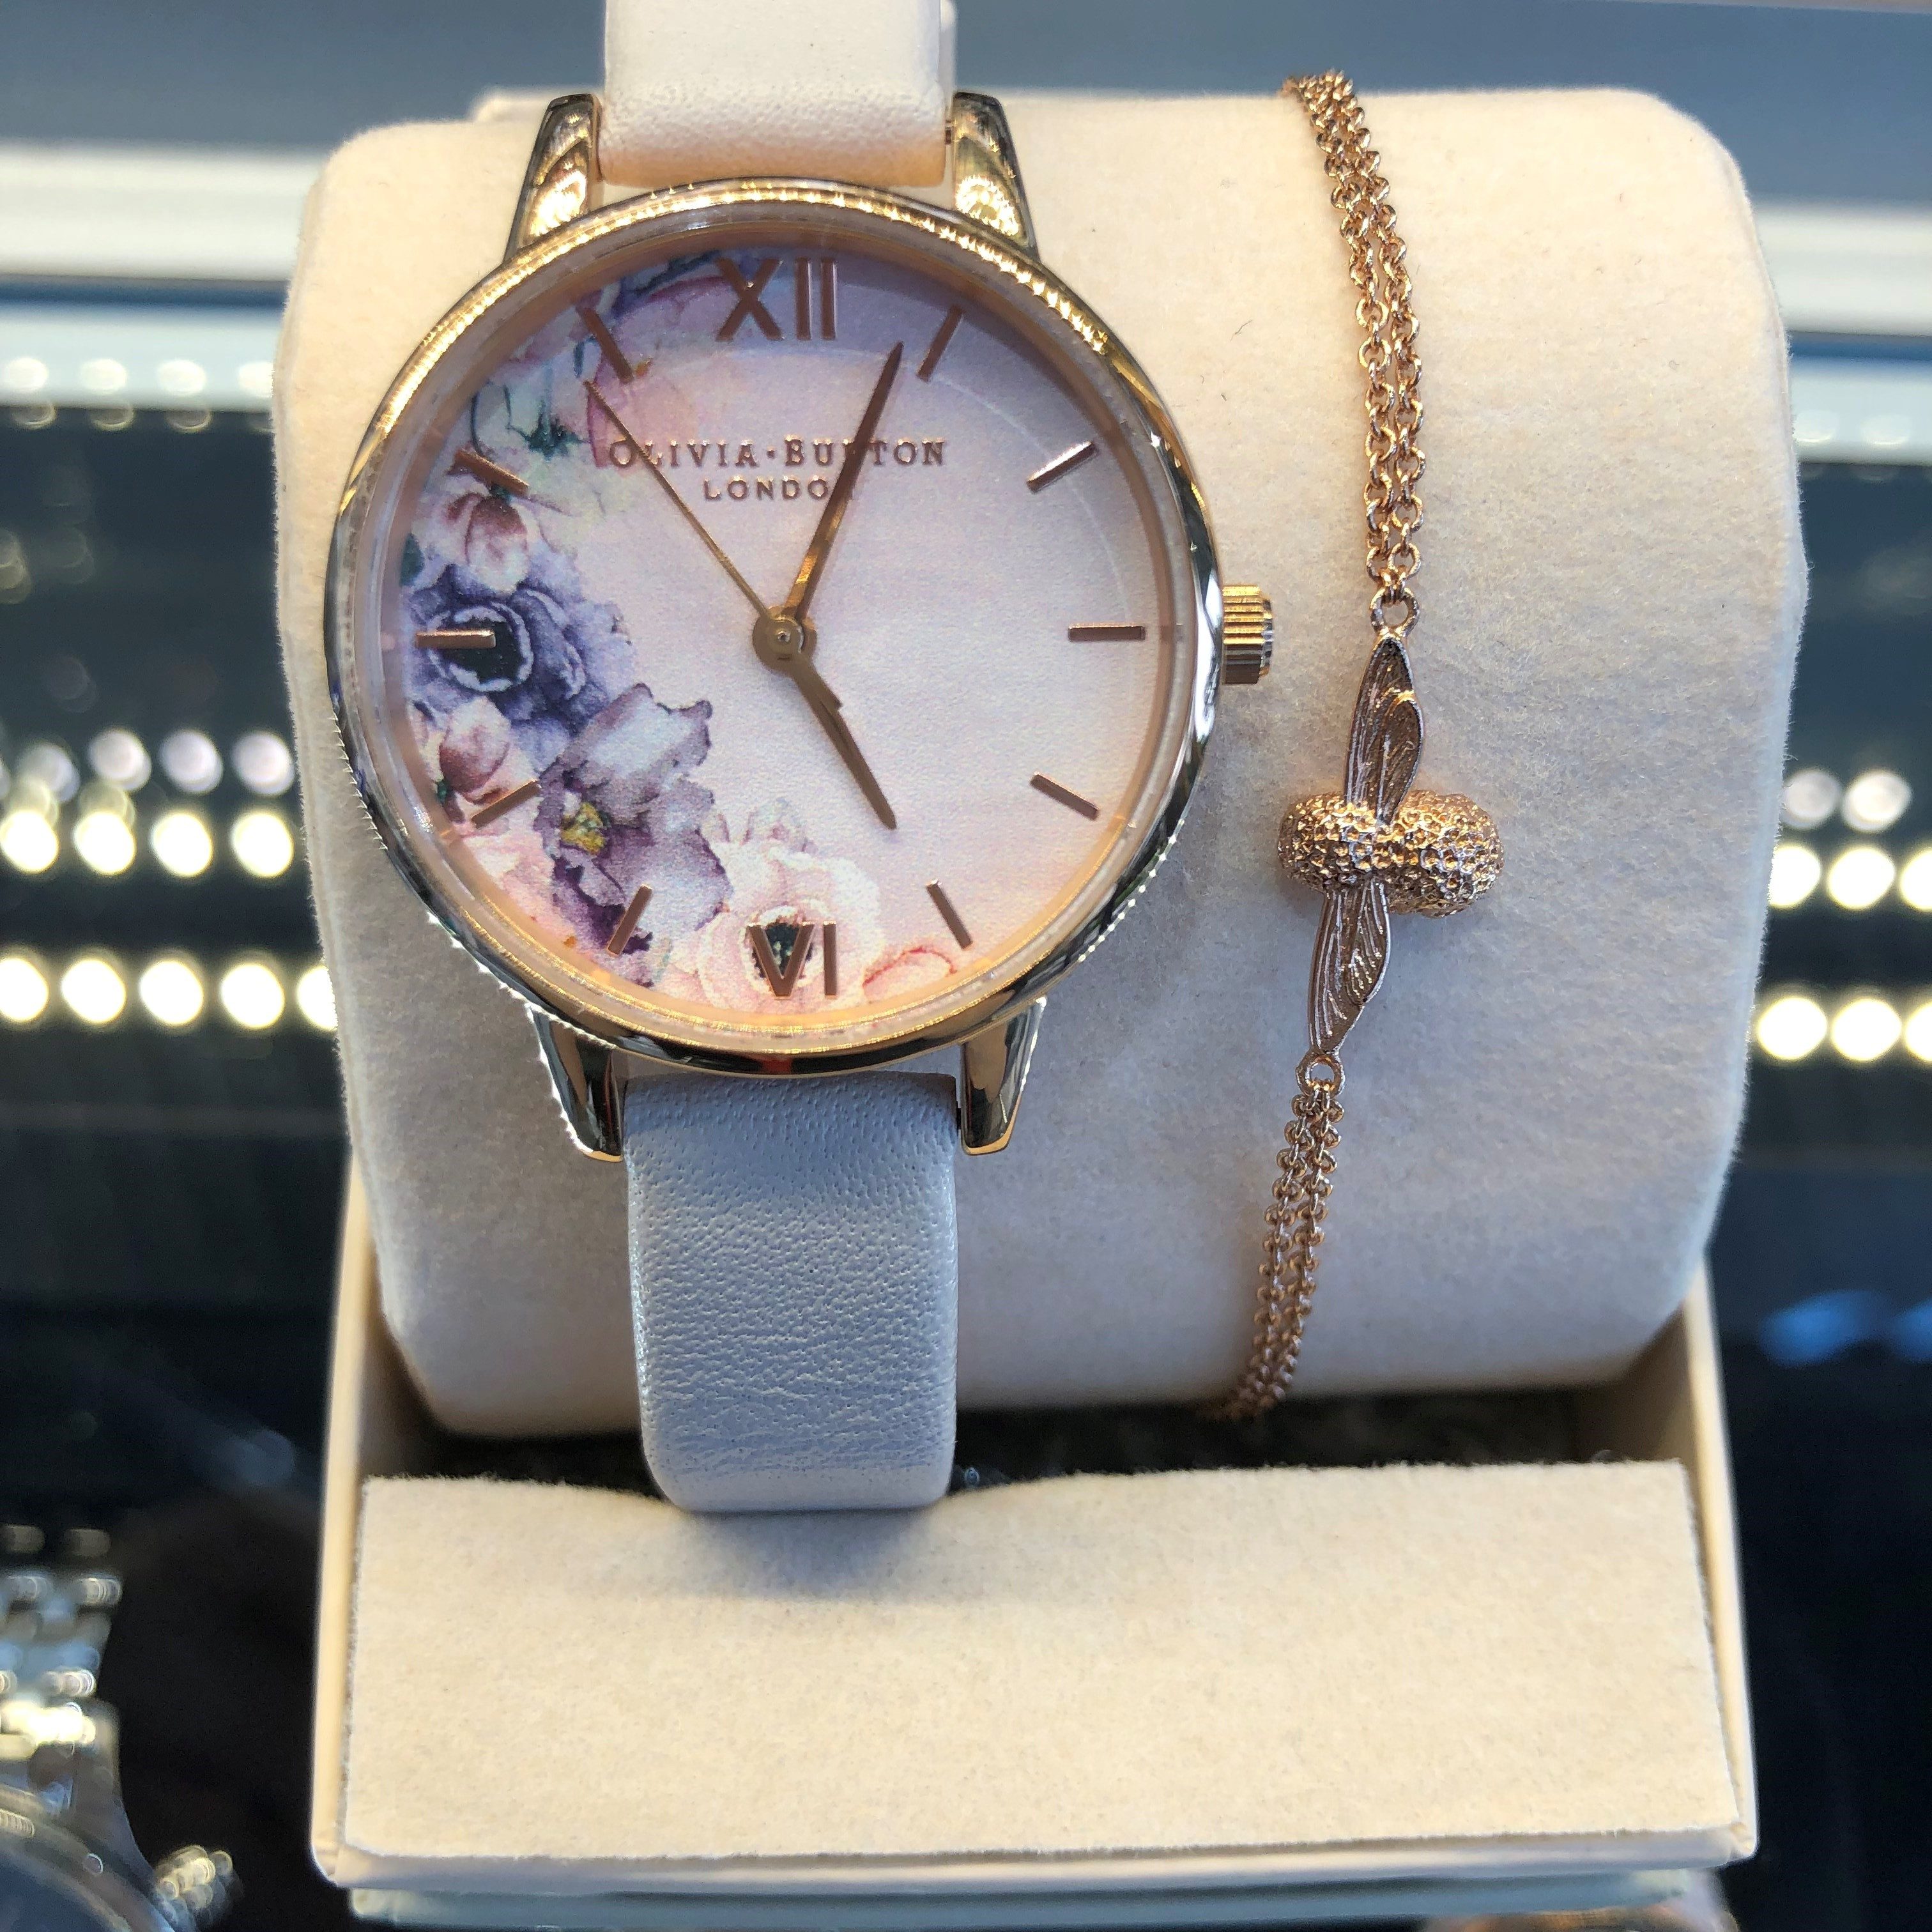 ブレスレット付きオリビアバートン | 国内ブランド腕時計・輸入腕時計販売・時計修理の時計倉庫TOKIA